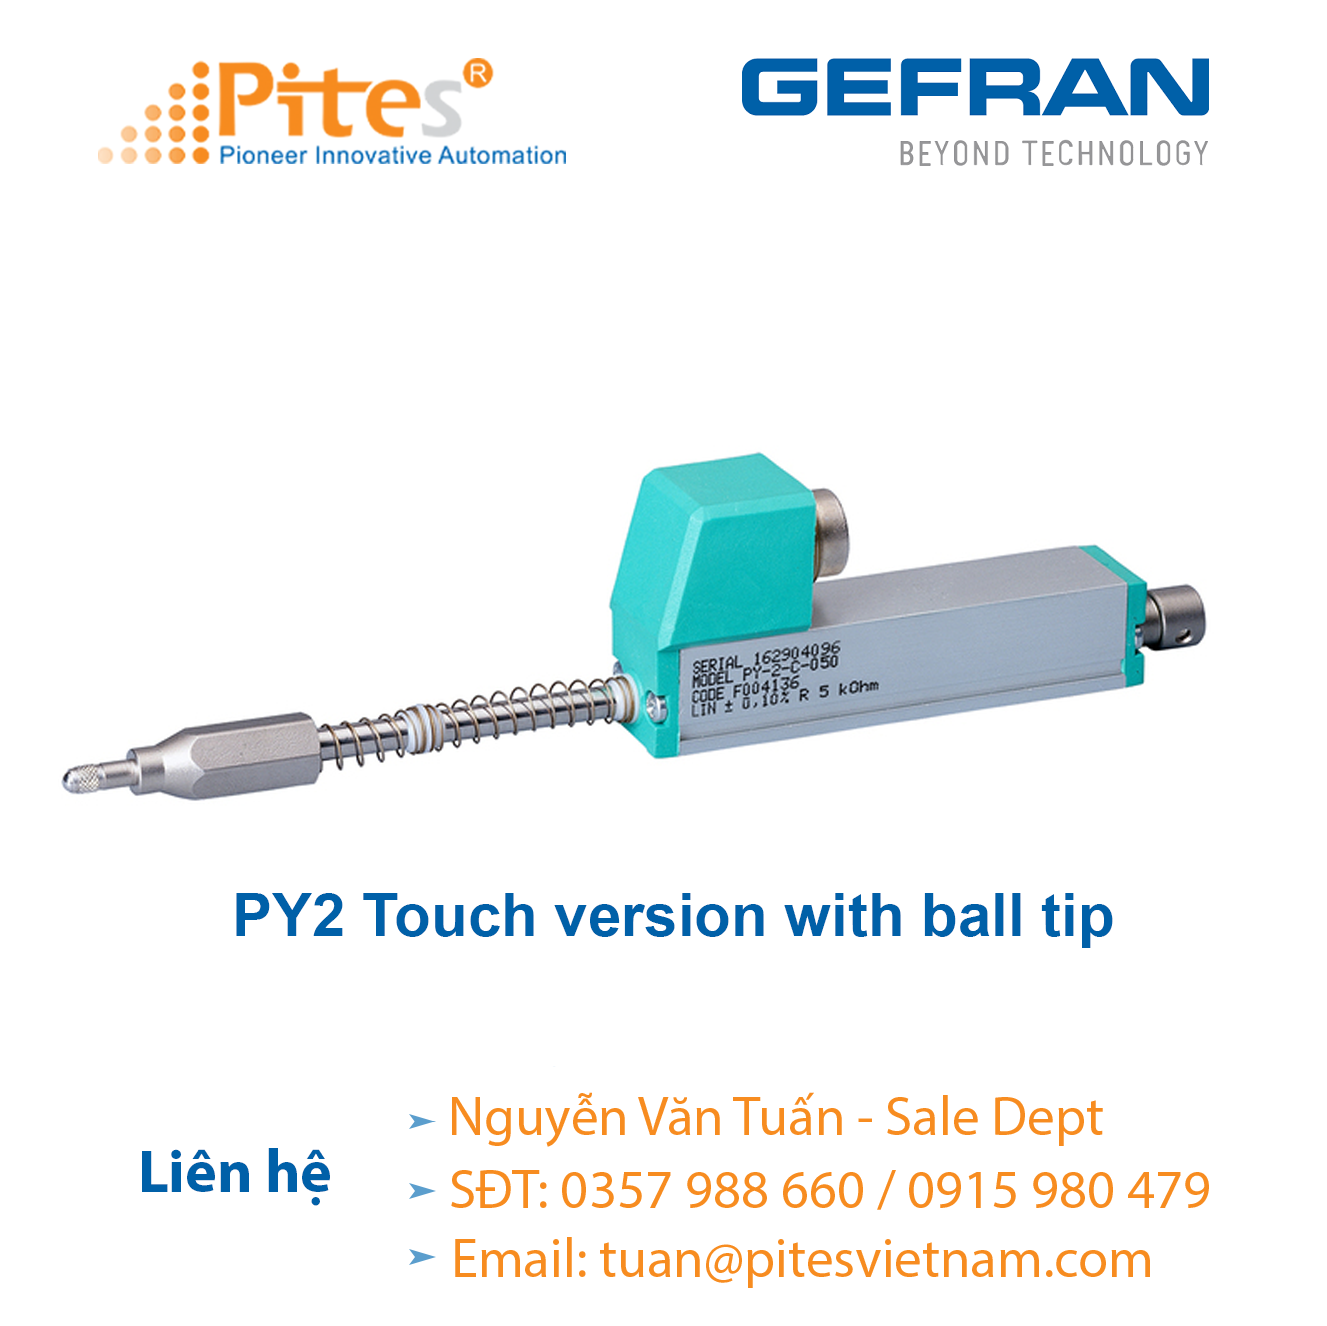 py2-touch-version-with-ball-tip-cam-bien-vi-tri-gefran-viet-nam.png